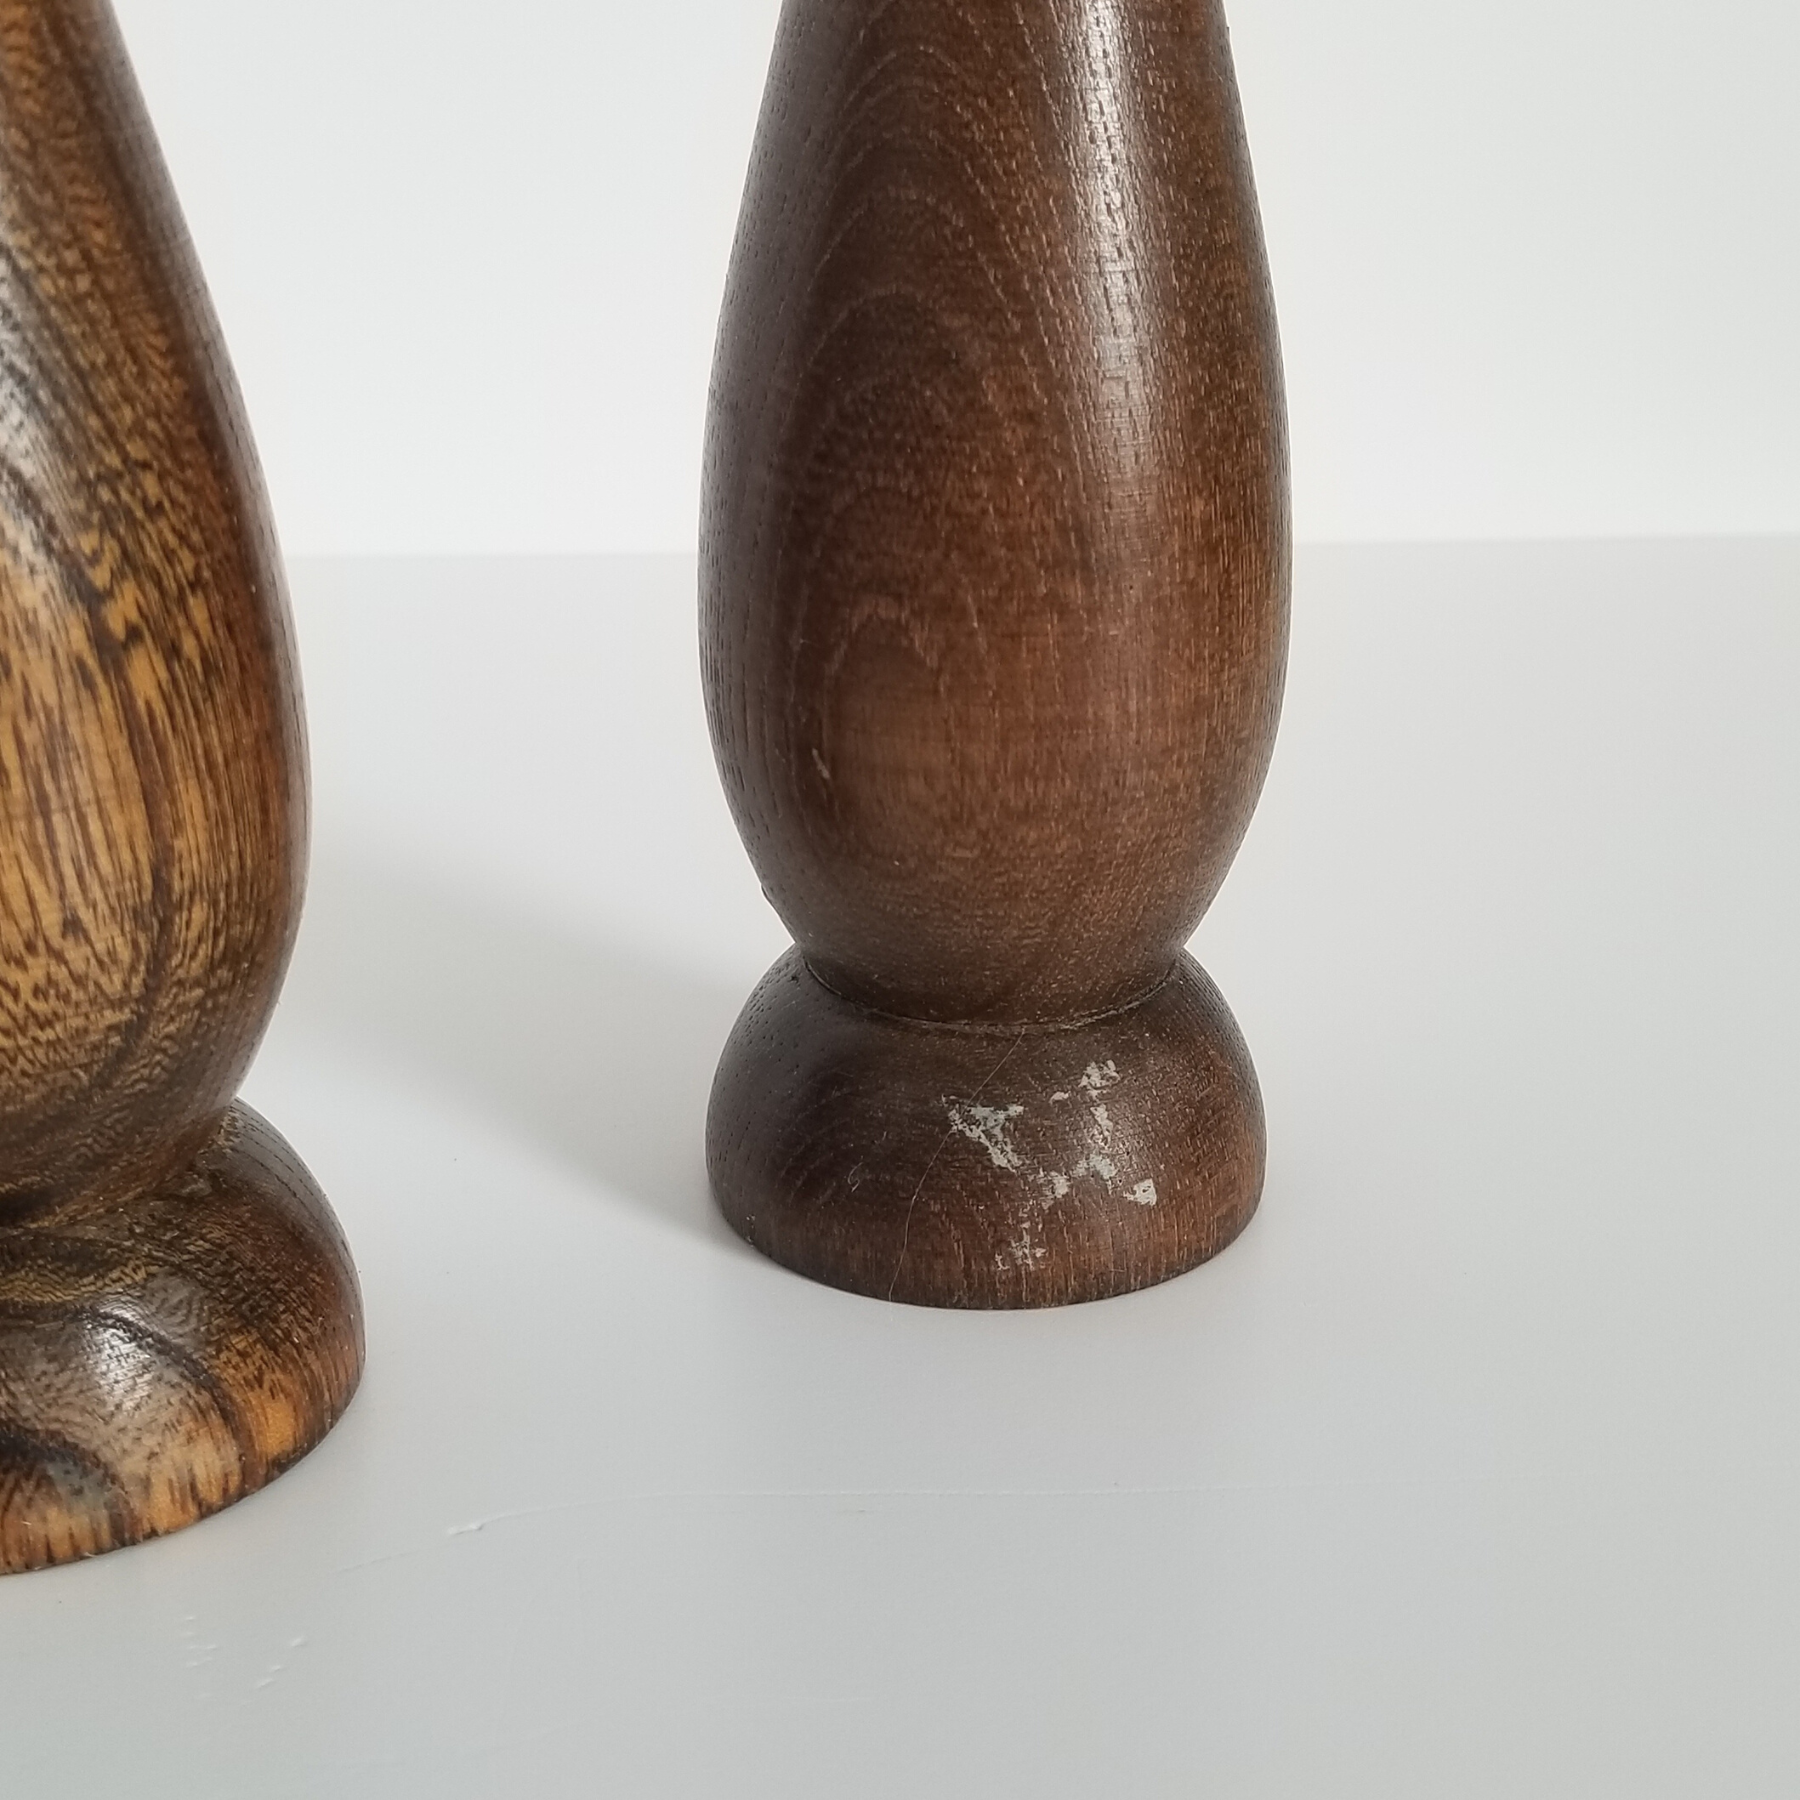 Vintage Wooden Salt Shaker Imperfection